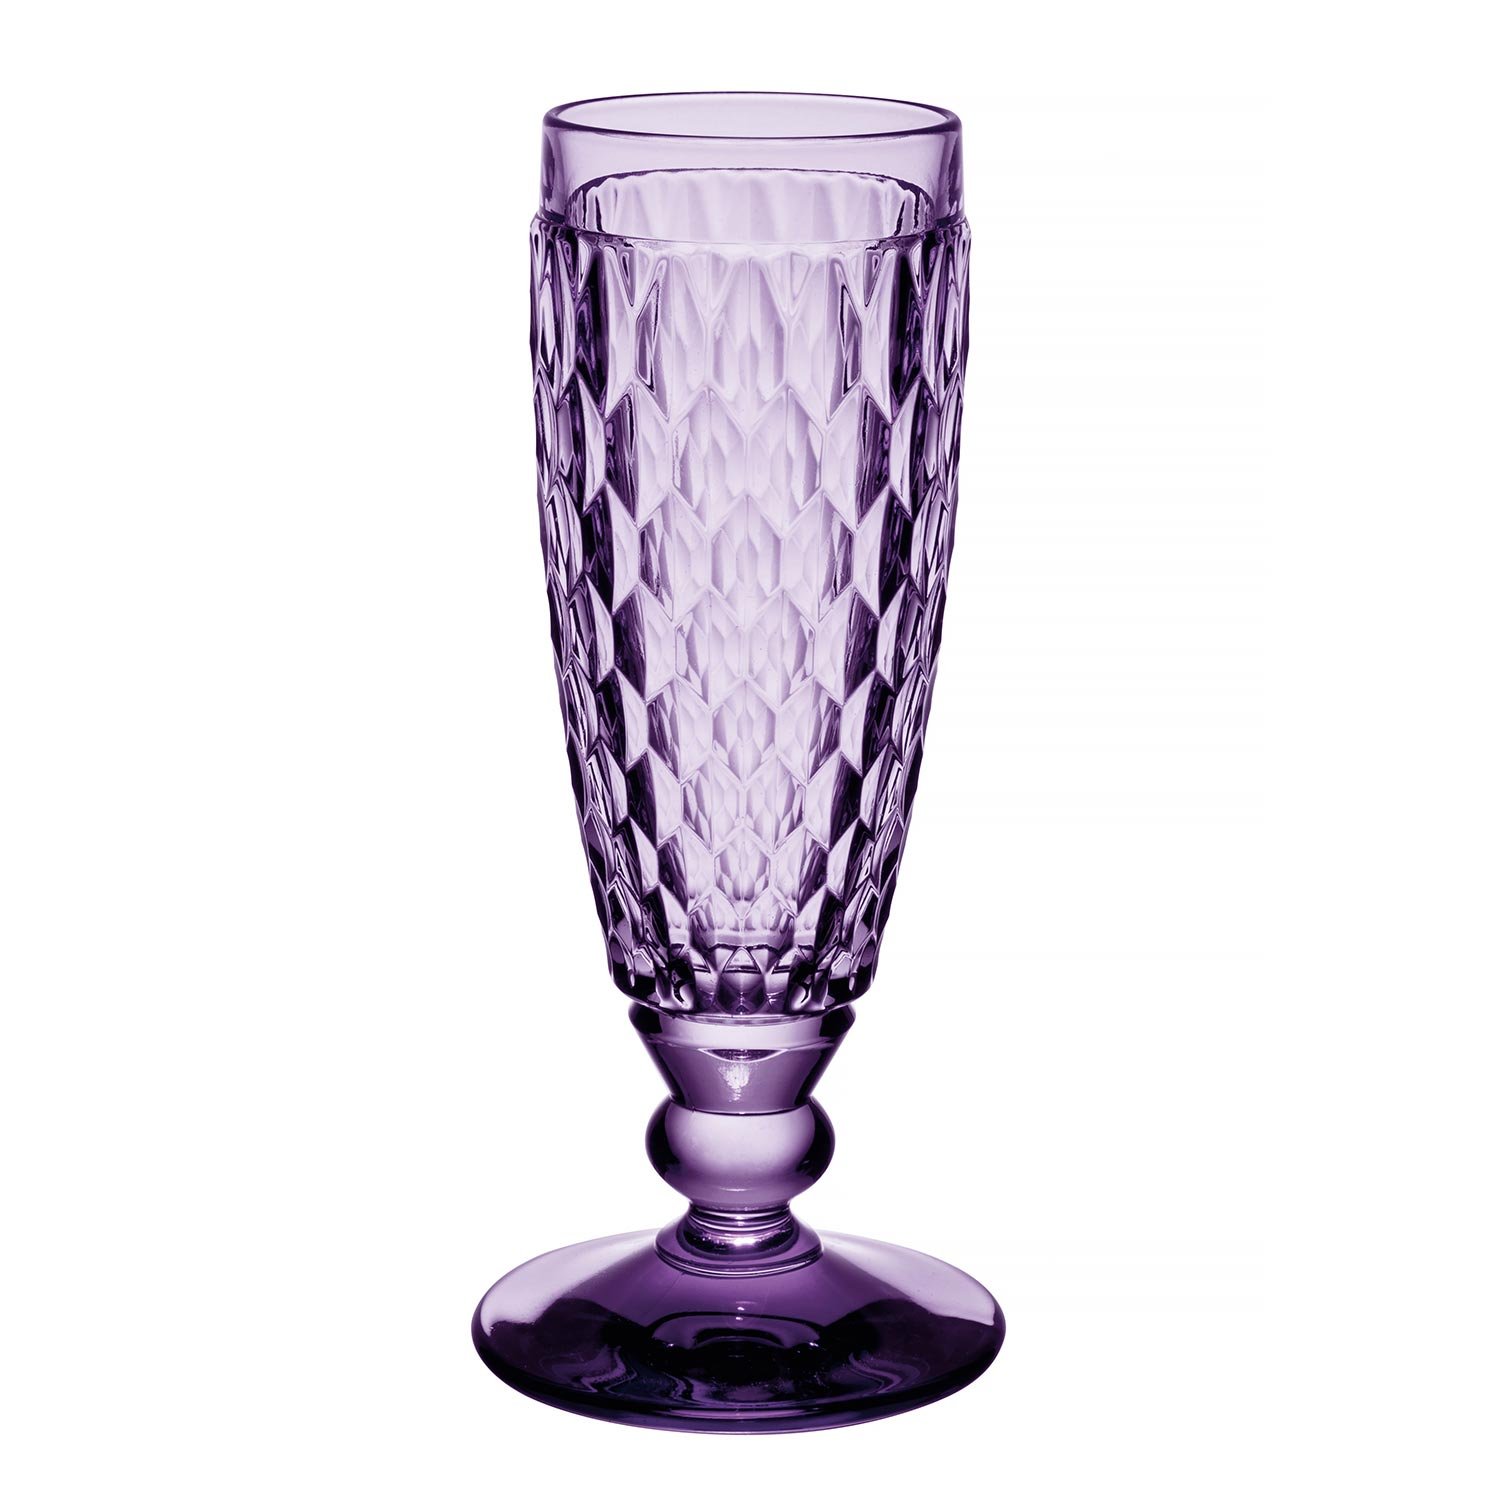 Boston Lavender Бокал для шампанского 163 мм, объем 150 мл Villeroy & Boch
https://spb.v-b.ru
г.Санкт-Петербург
eshop@v-b.spb.ru
+7(812)3801977